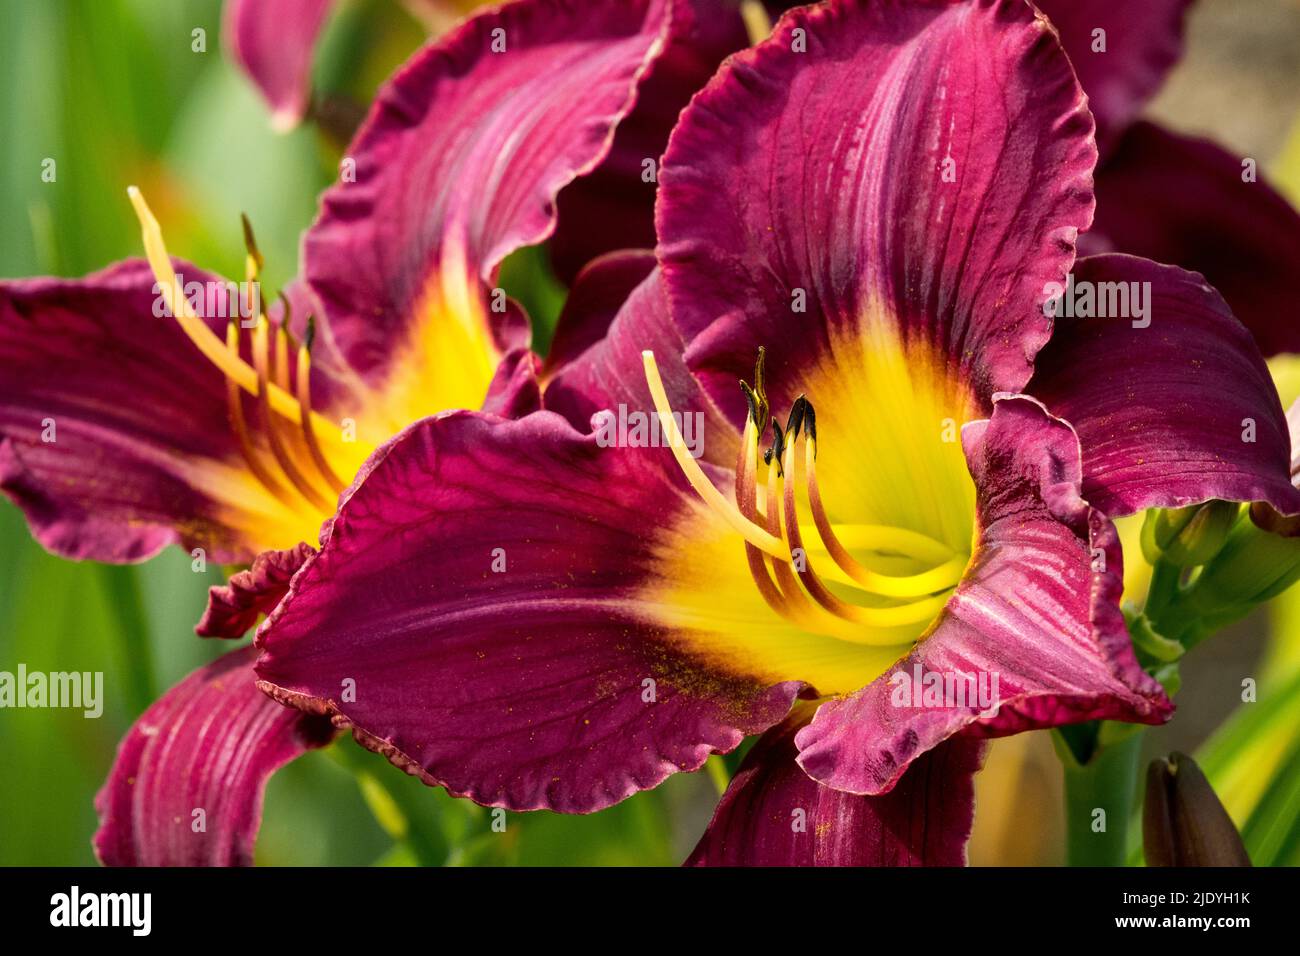 Beautiful daylilies Flowers Daylily Hemerocallis 'Bela Lugosi' dark purple blooms, Early Summer June flower Stock Photo